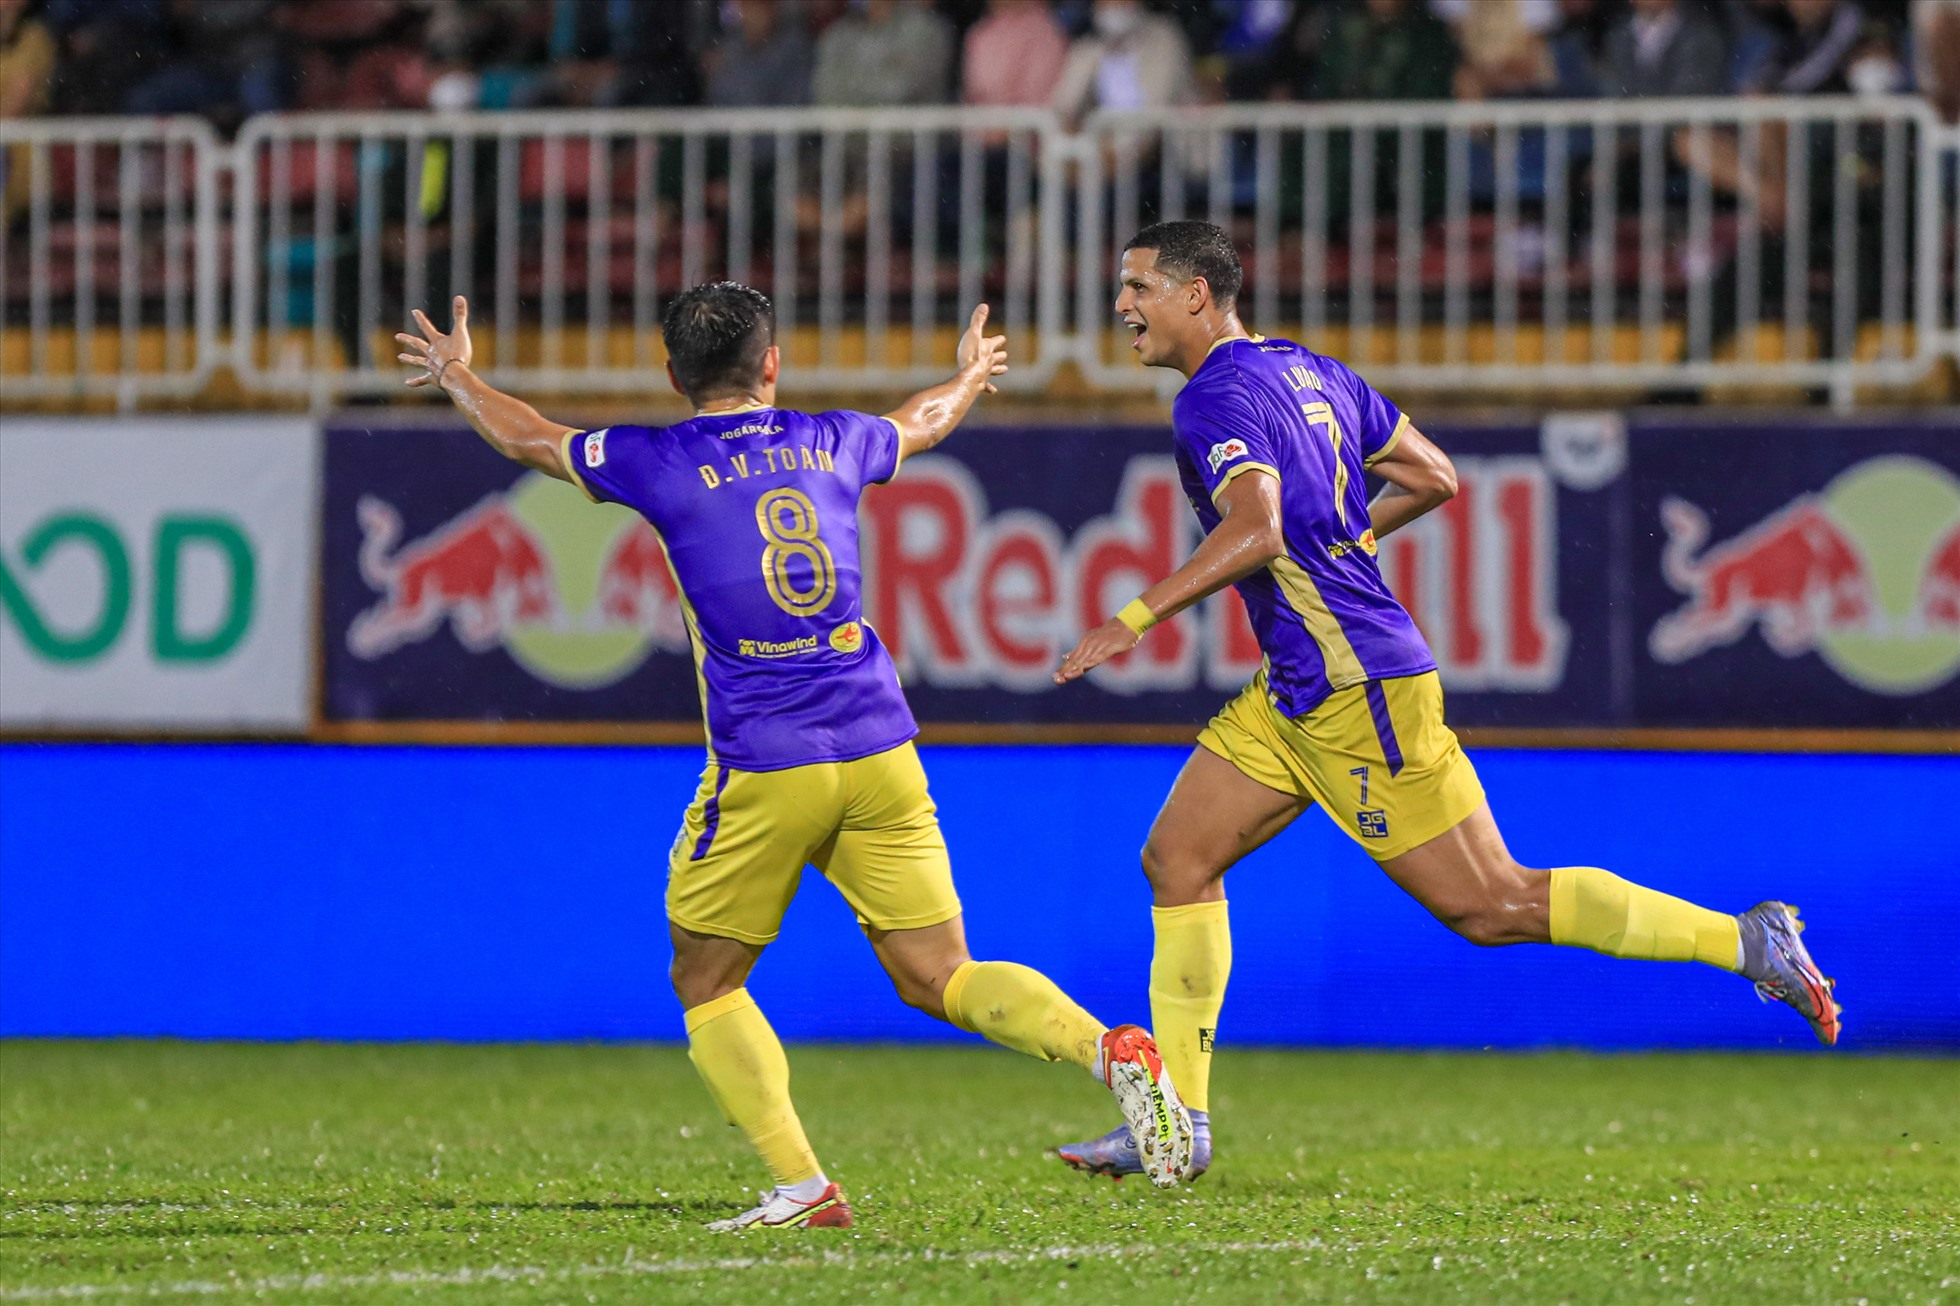 Đội khách Hà Nội chơi phòng ngự chặt chẽ và thực hiện những tình huống phản công sắc lẹm. Cú đúp của Lucao Vinicius ở phút 37 và 59 giúp đại diện bóng đá Thủ đô góp mặt ở trận chung kết cúp quốc gia 2022.